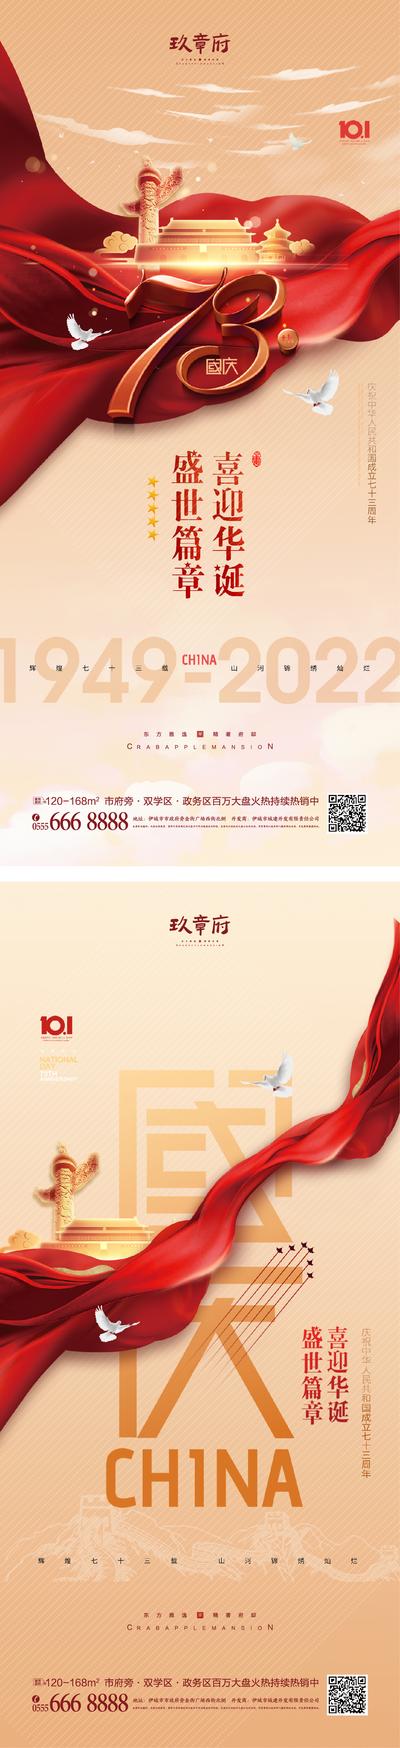 南门网 海报 地产 公历节日 国庆节 73周年 101 金色 天安门 华表 红绸